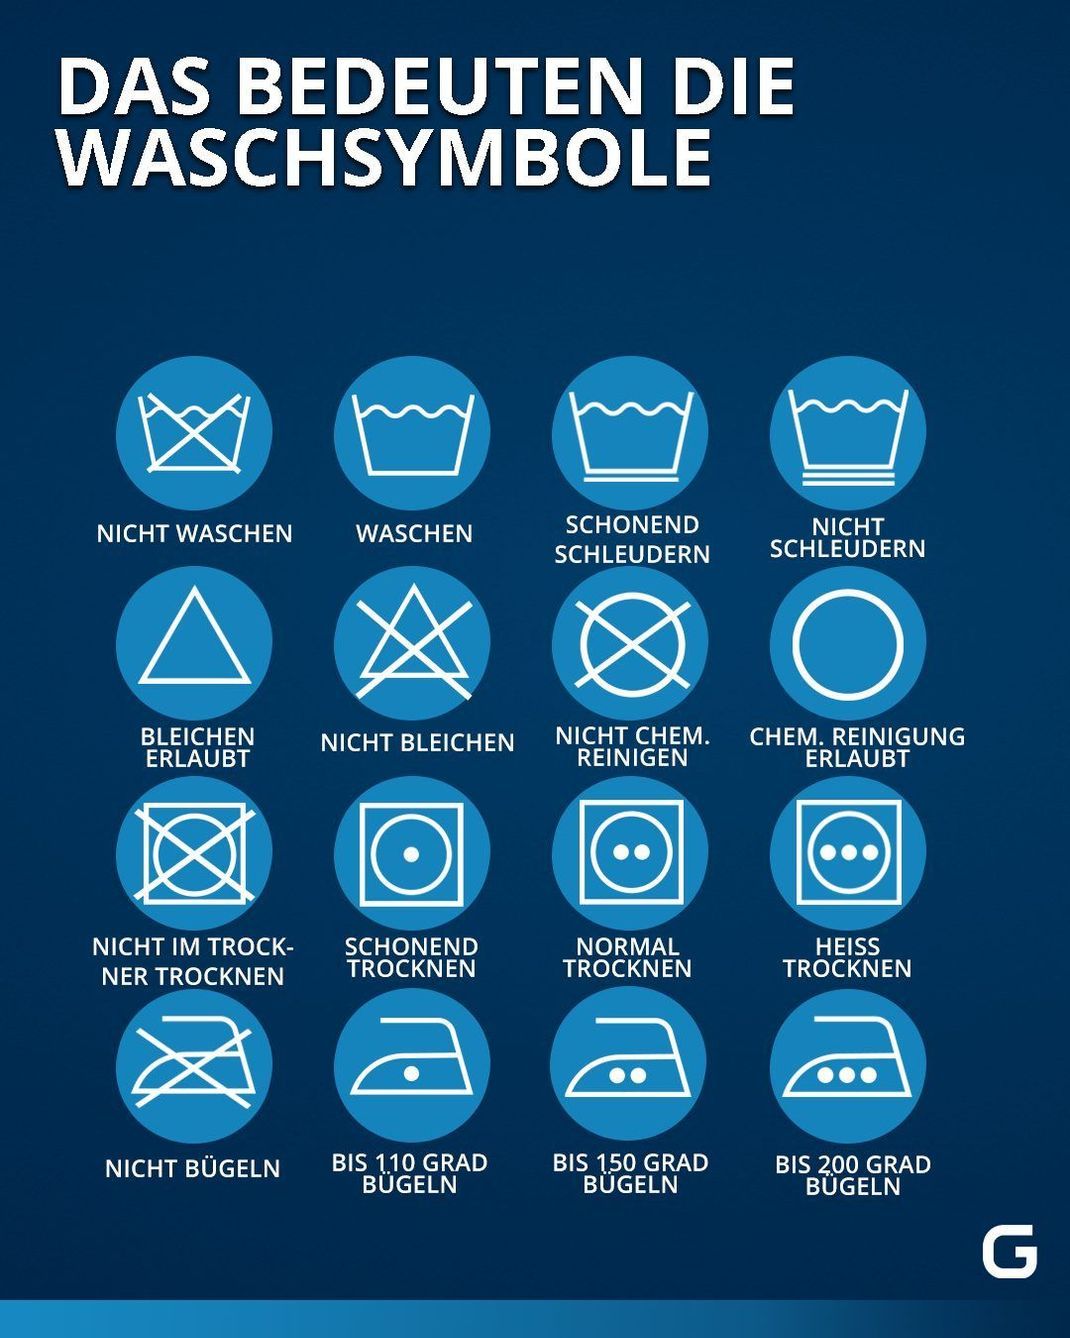 Die Grafik beschreibt die Bedeutung der unterschiedlichen Wasch-Symbole.